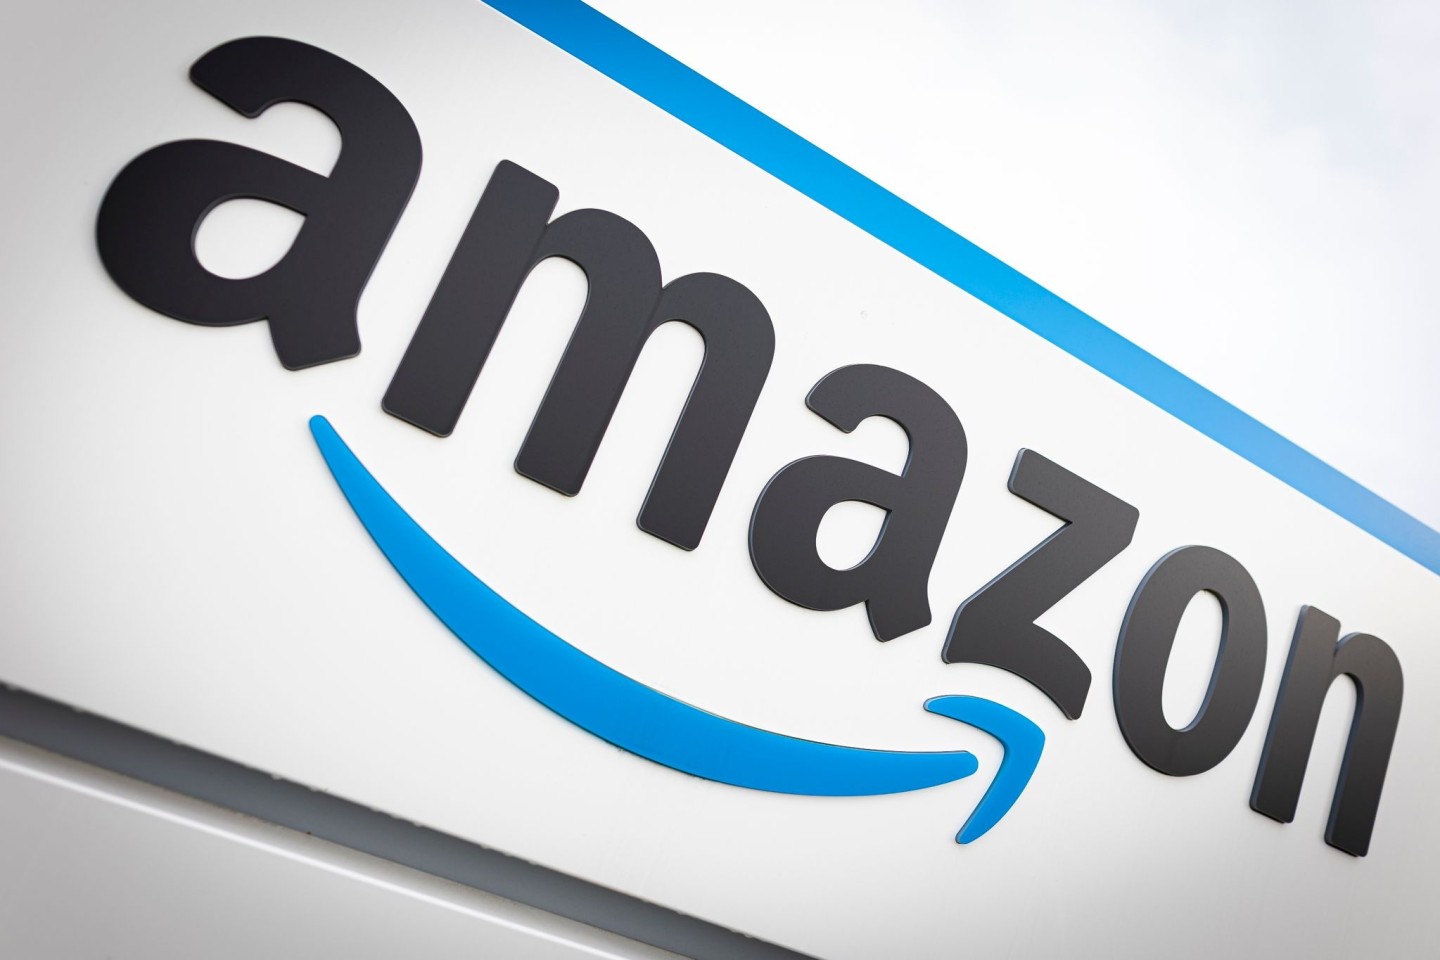 Zwei Amazon-Mitarbeiter sind nach Diebstählen zu Haftstrafen verurteilt worden.